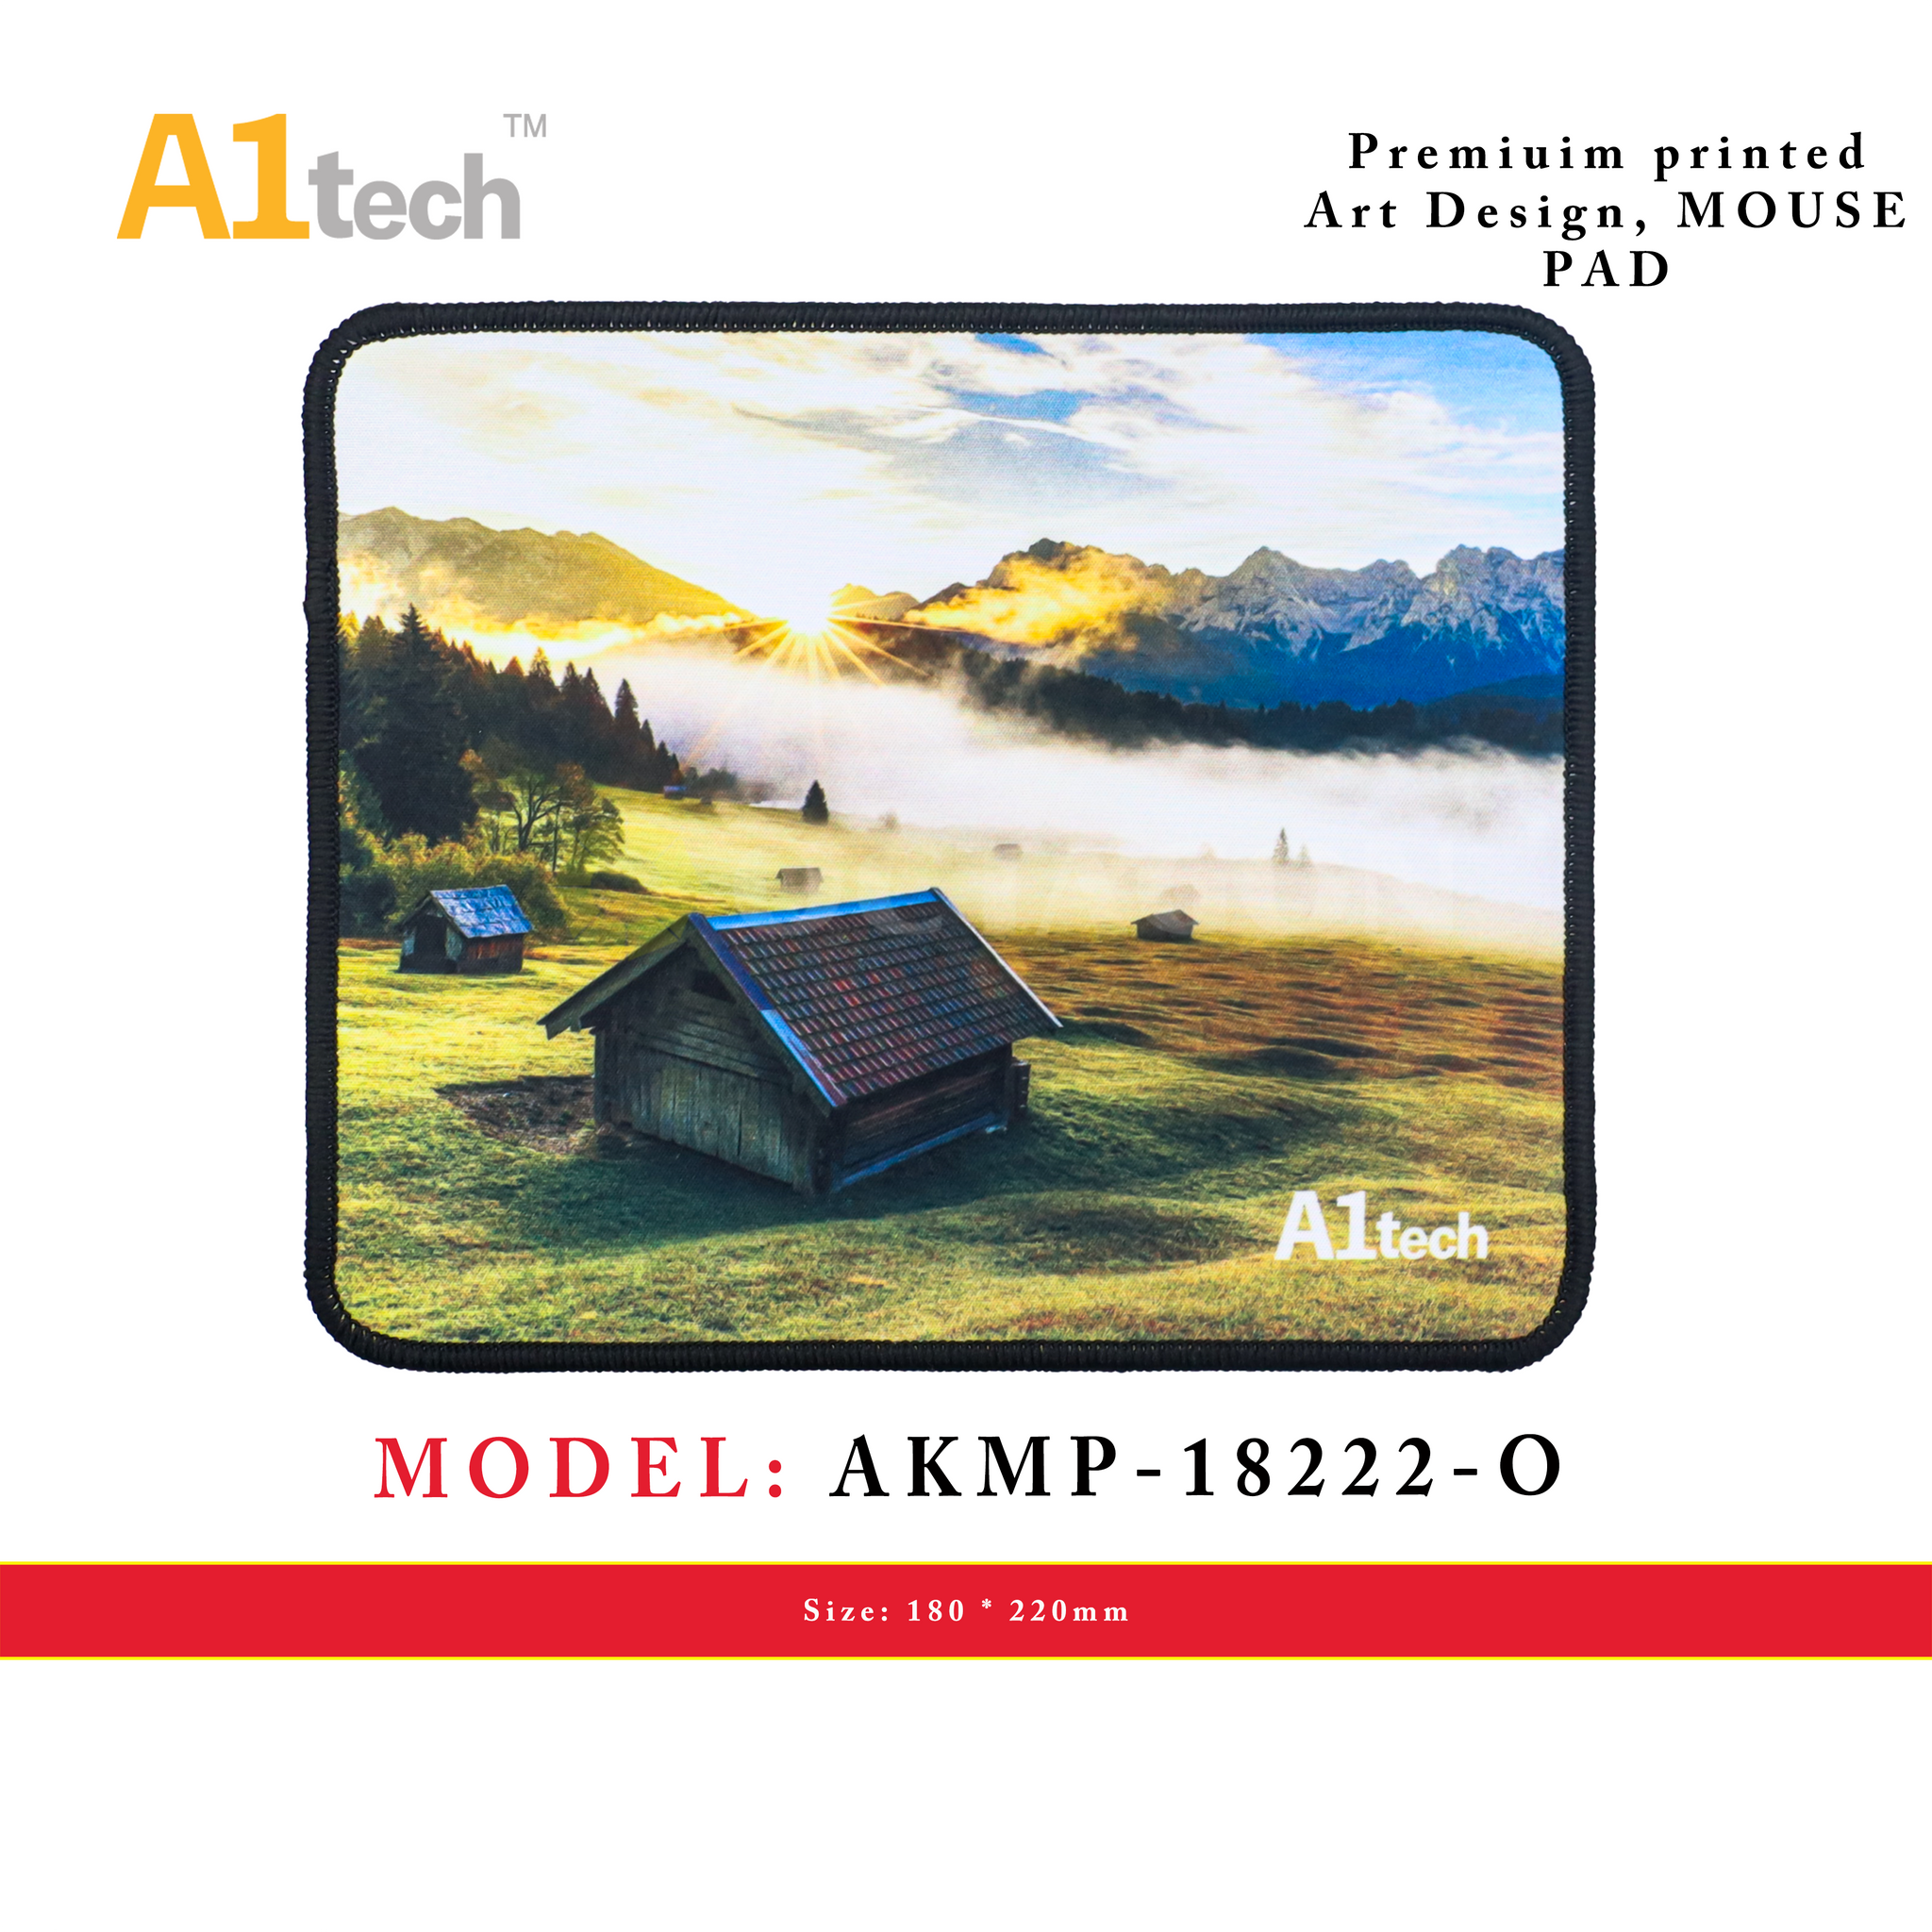 A1TECH AKMP-18222-O MOUSE PAD